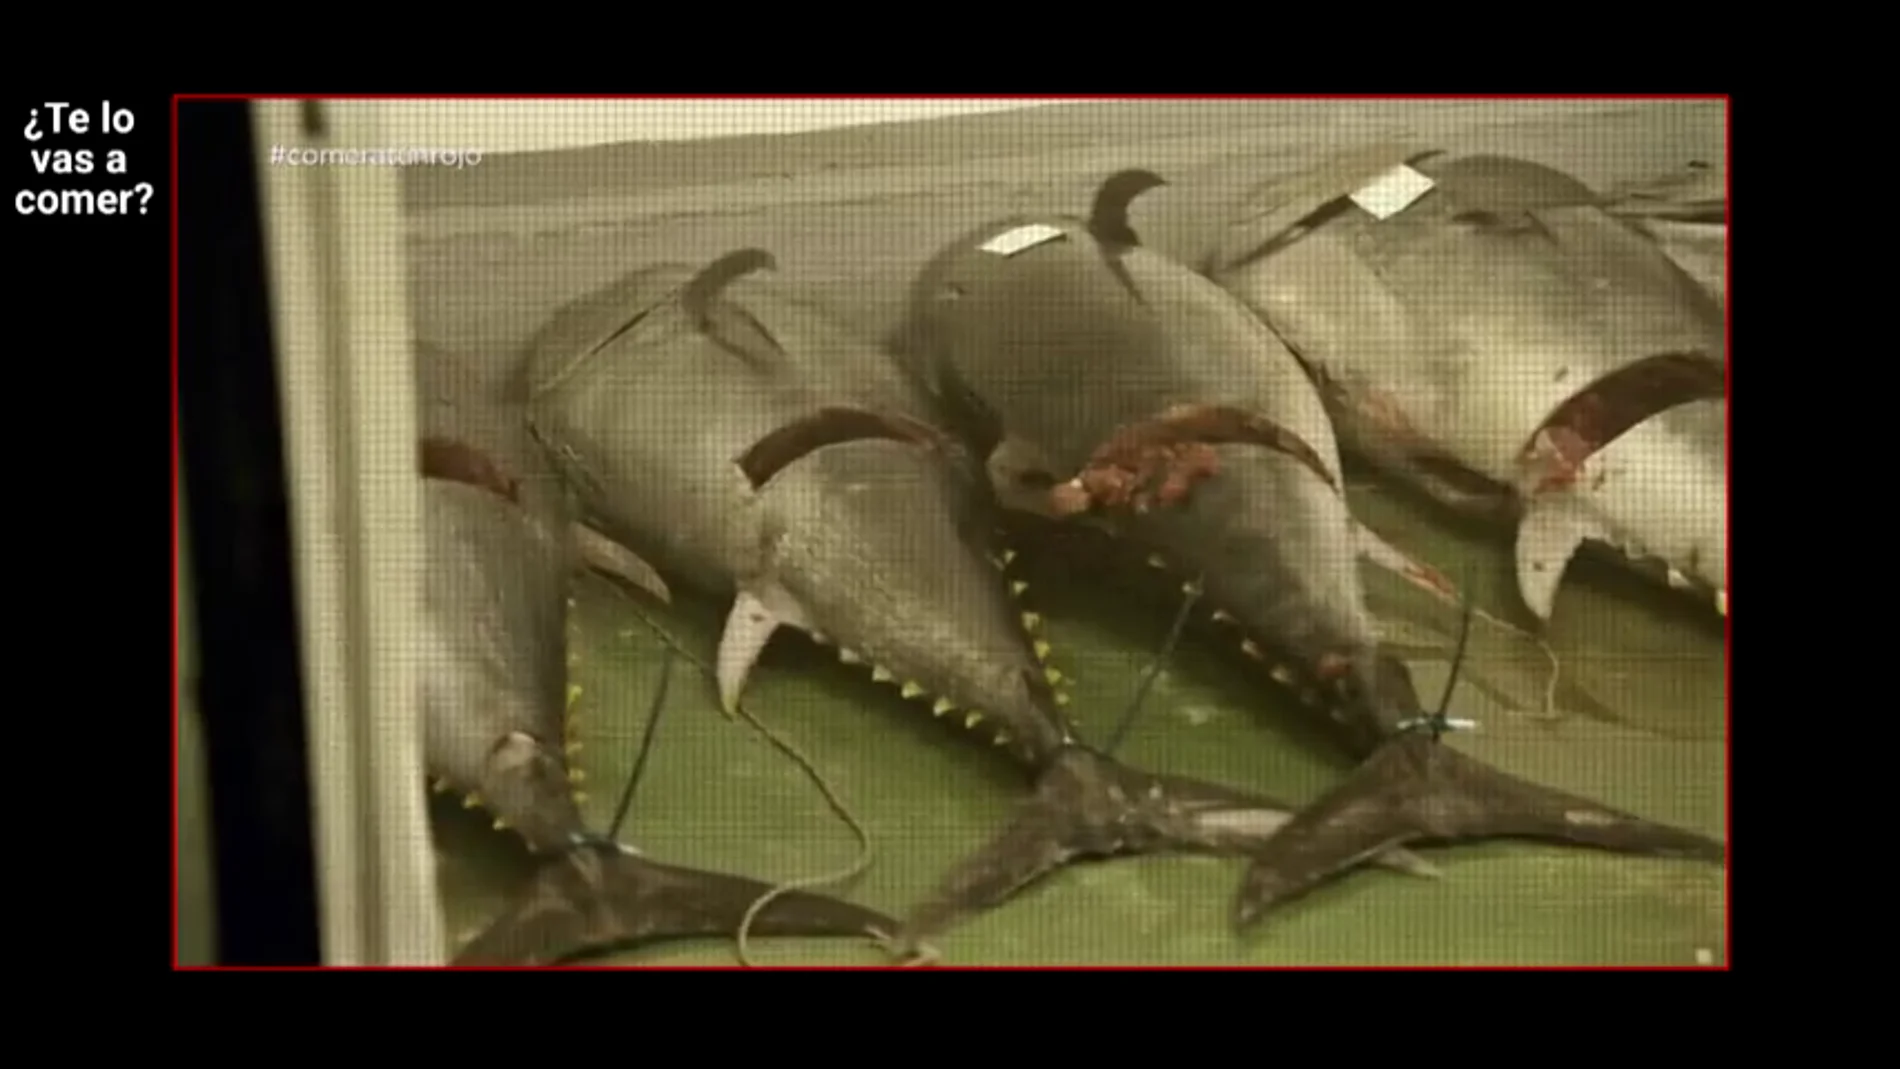 ¿Te lo vas a comer? accede a la nave ilegal de uno de los principales distribuidores de atún rojo del país: "Las condiciones higiénicas son de vergüenza"